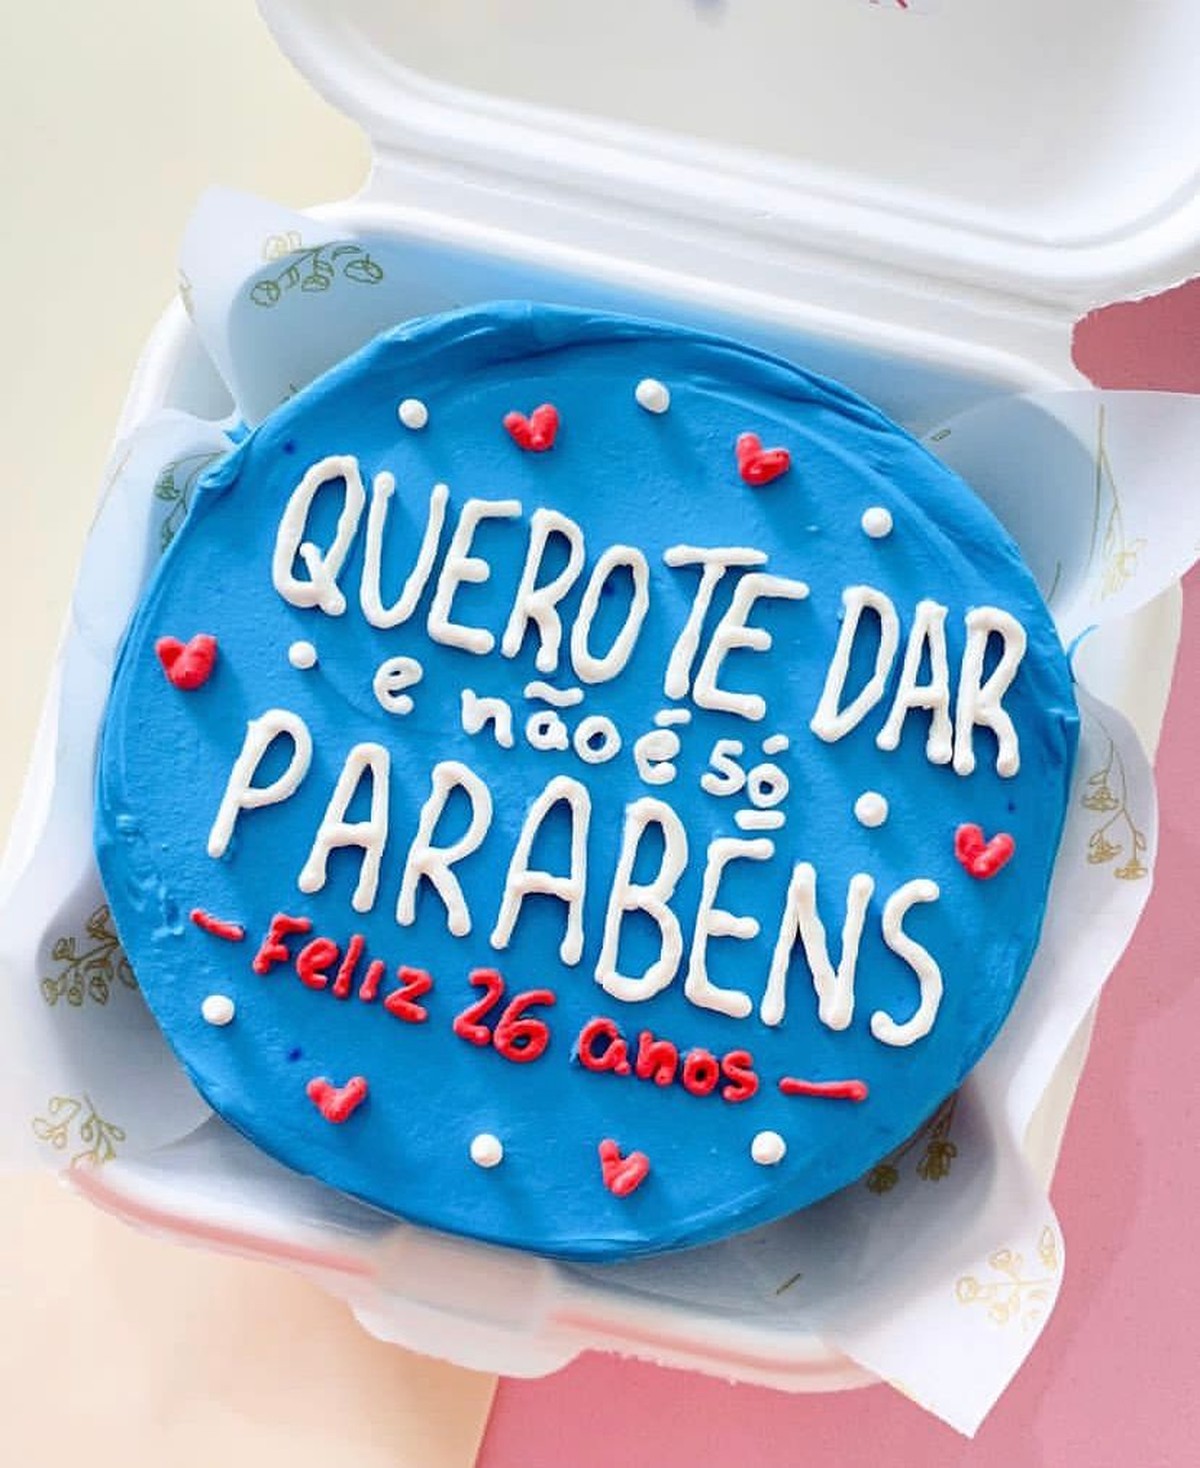 Confeiteiras bombam em SP vendendo bolos com indiretas sexuais e memes, Santos e Região